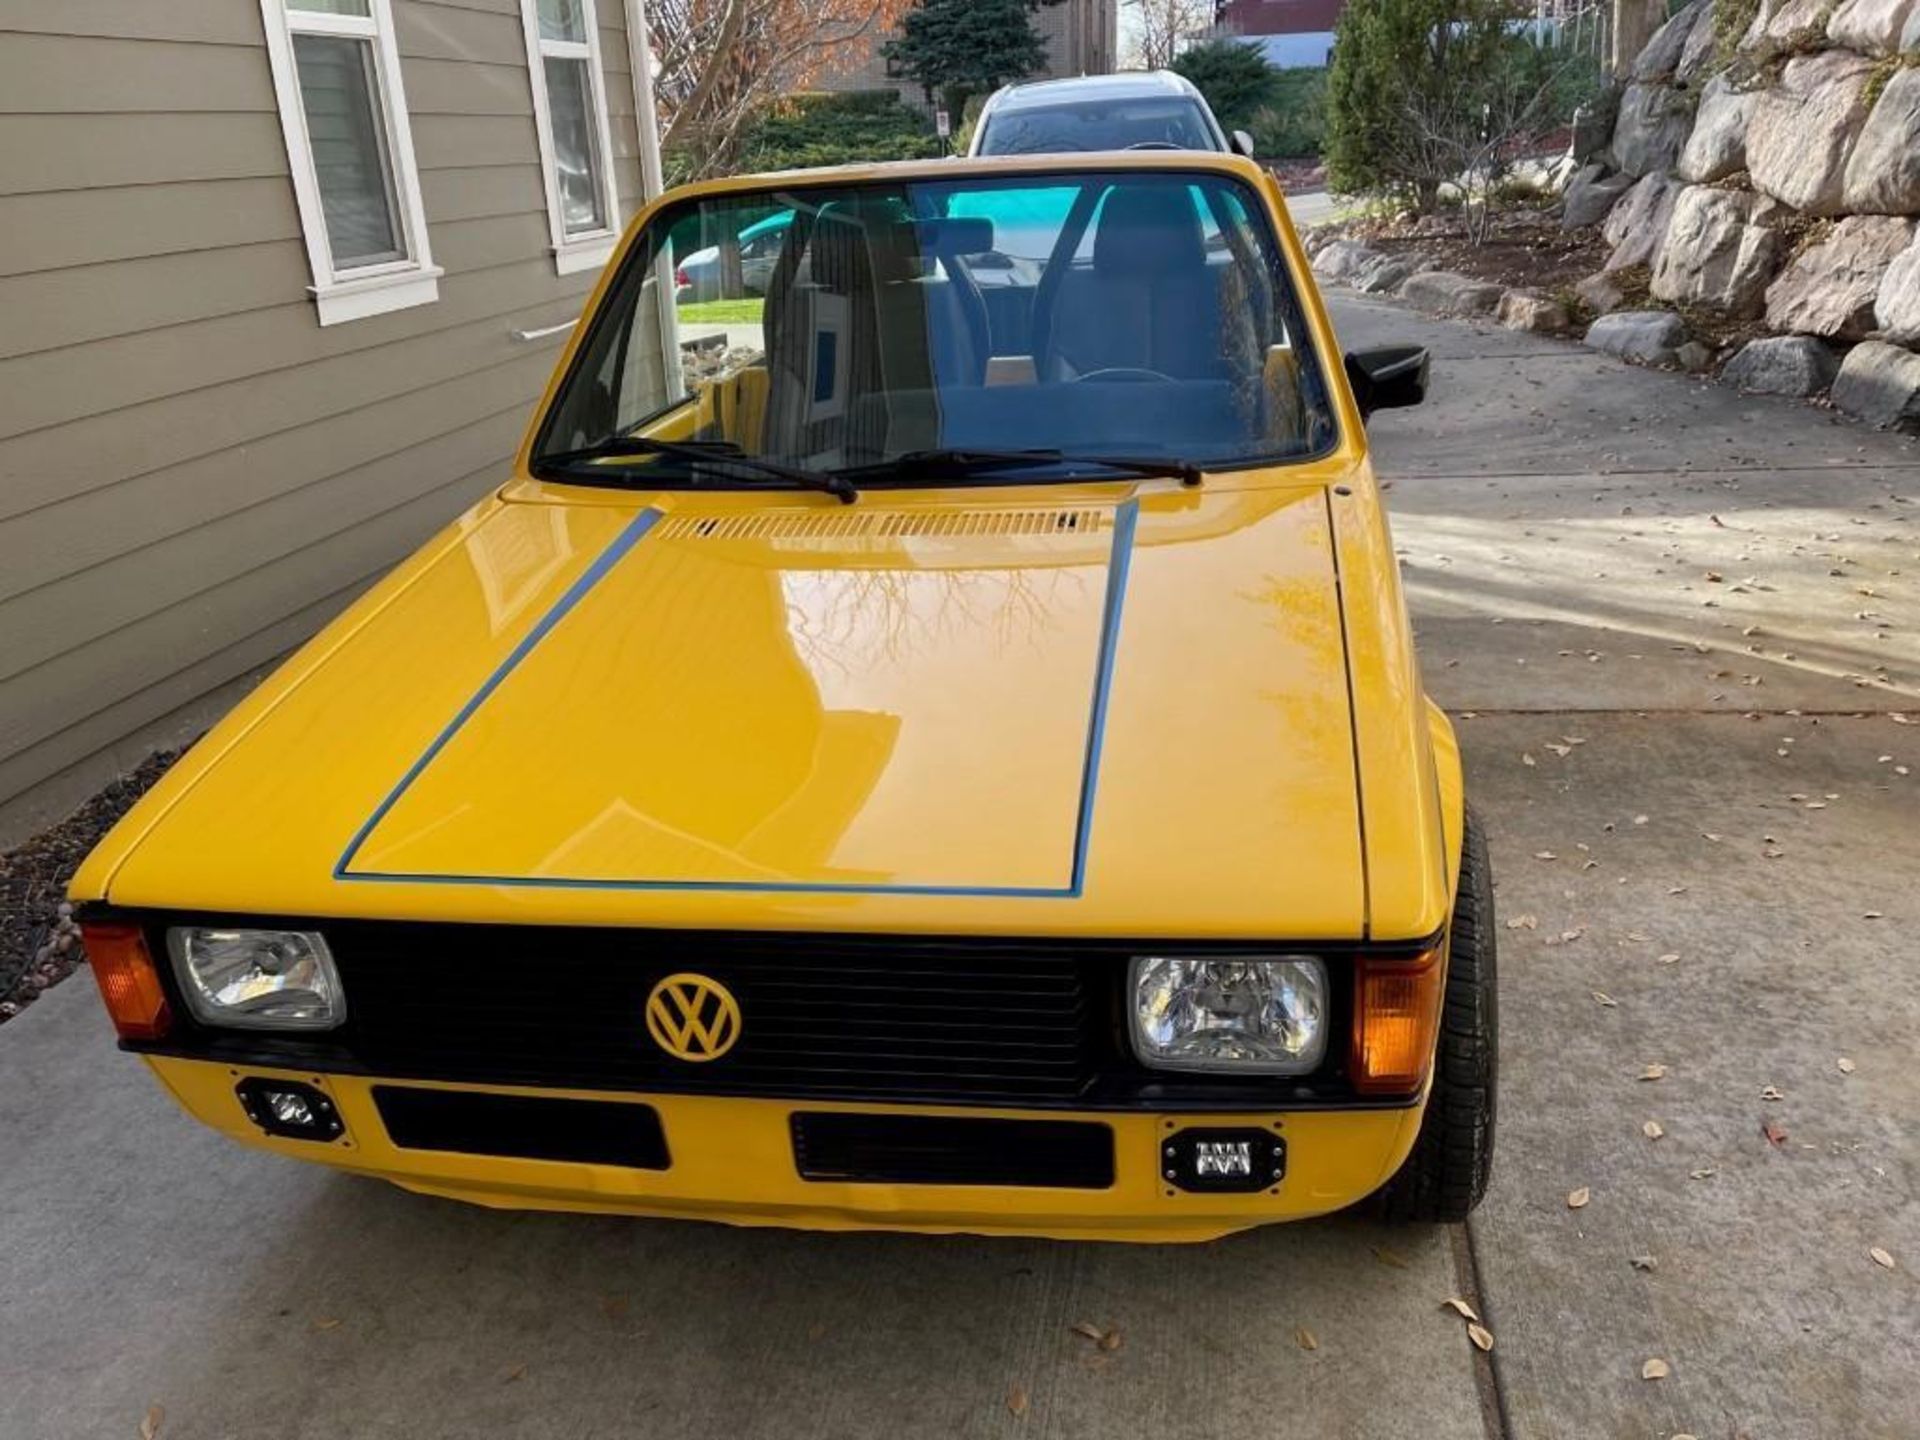 1983 VW Pickup - Image 3 of 5